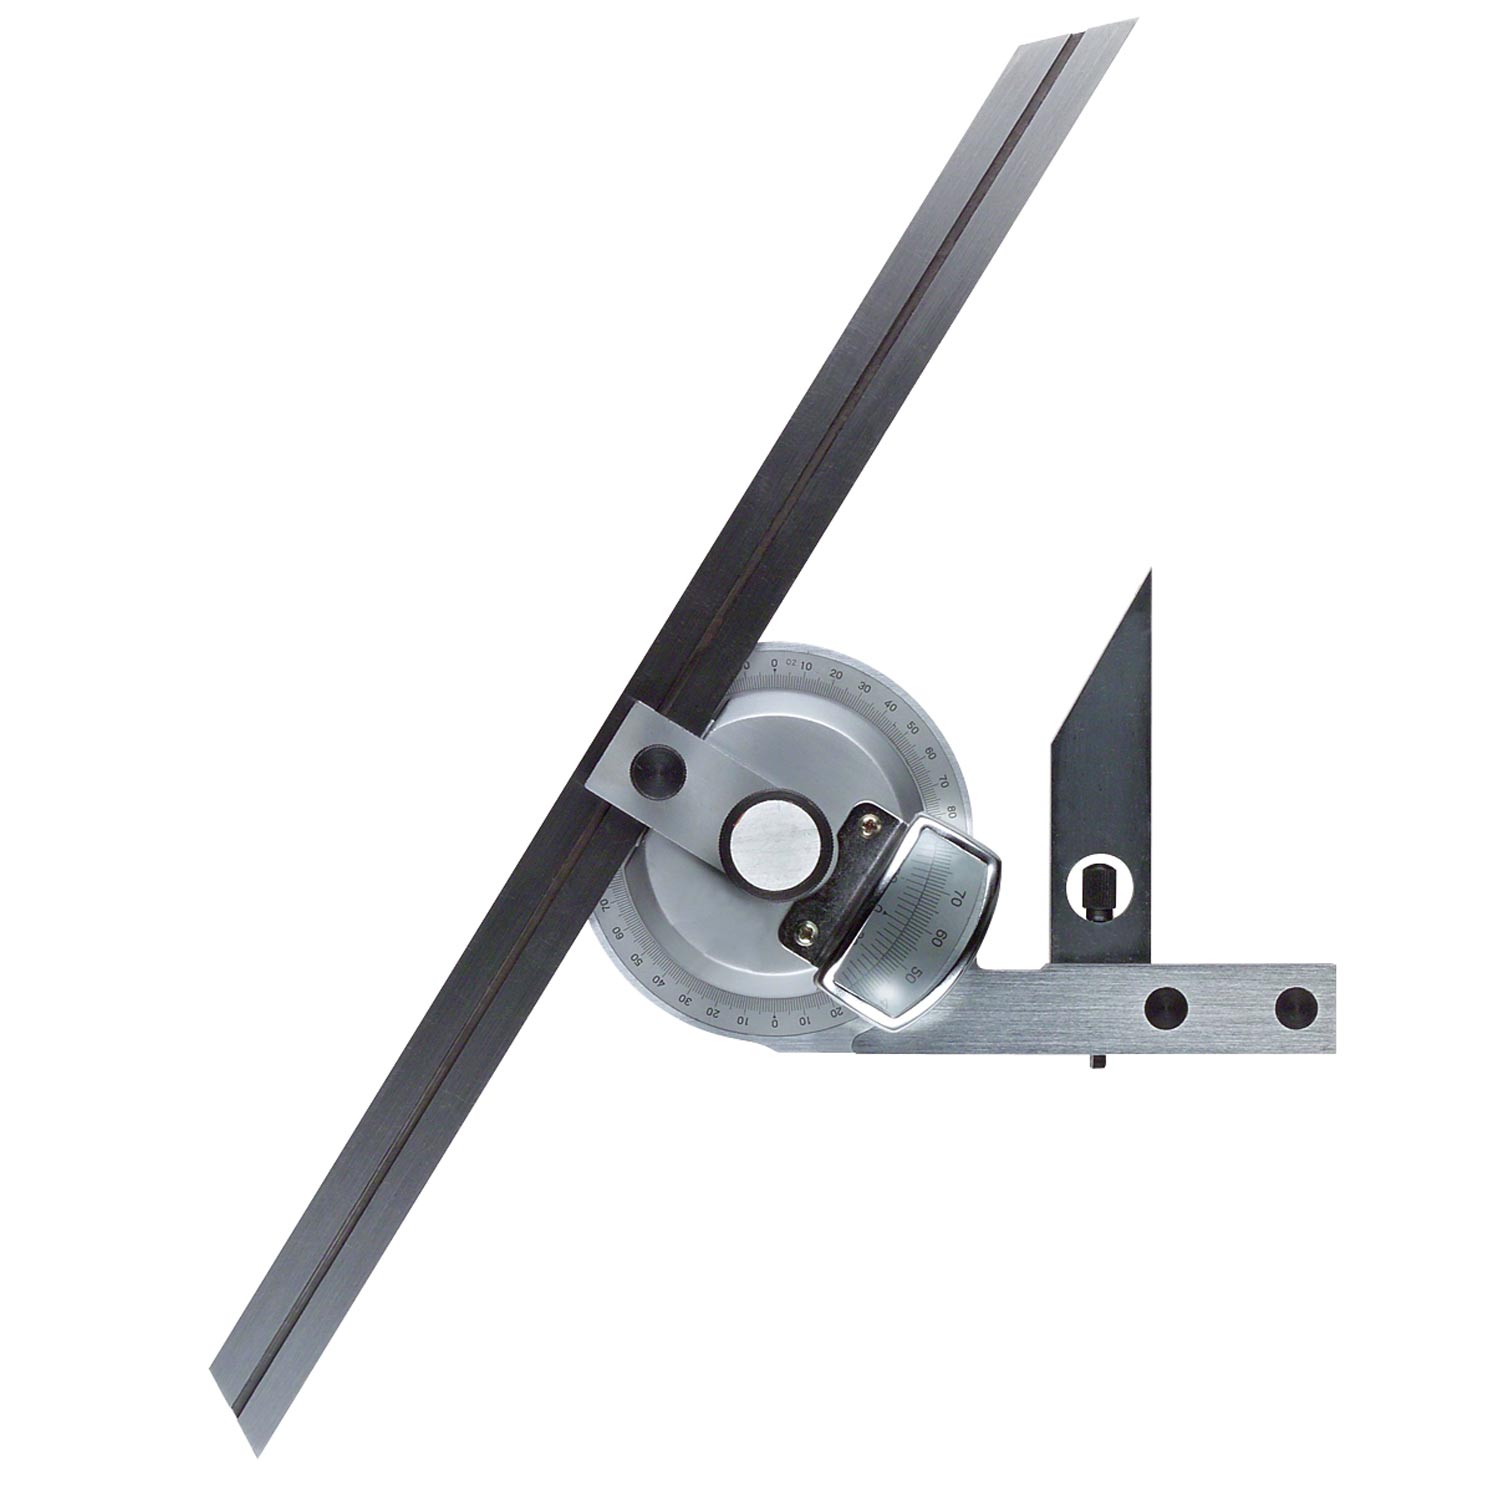 3 Messschienen inkl Universal Winkelmesser 0-360° mit Vergrößerungsglas 